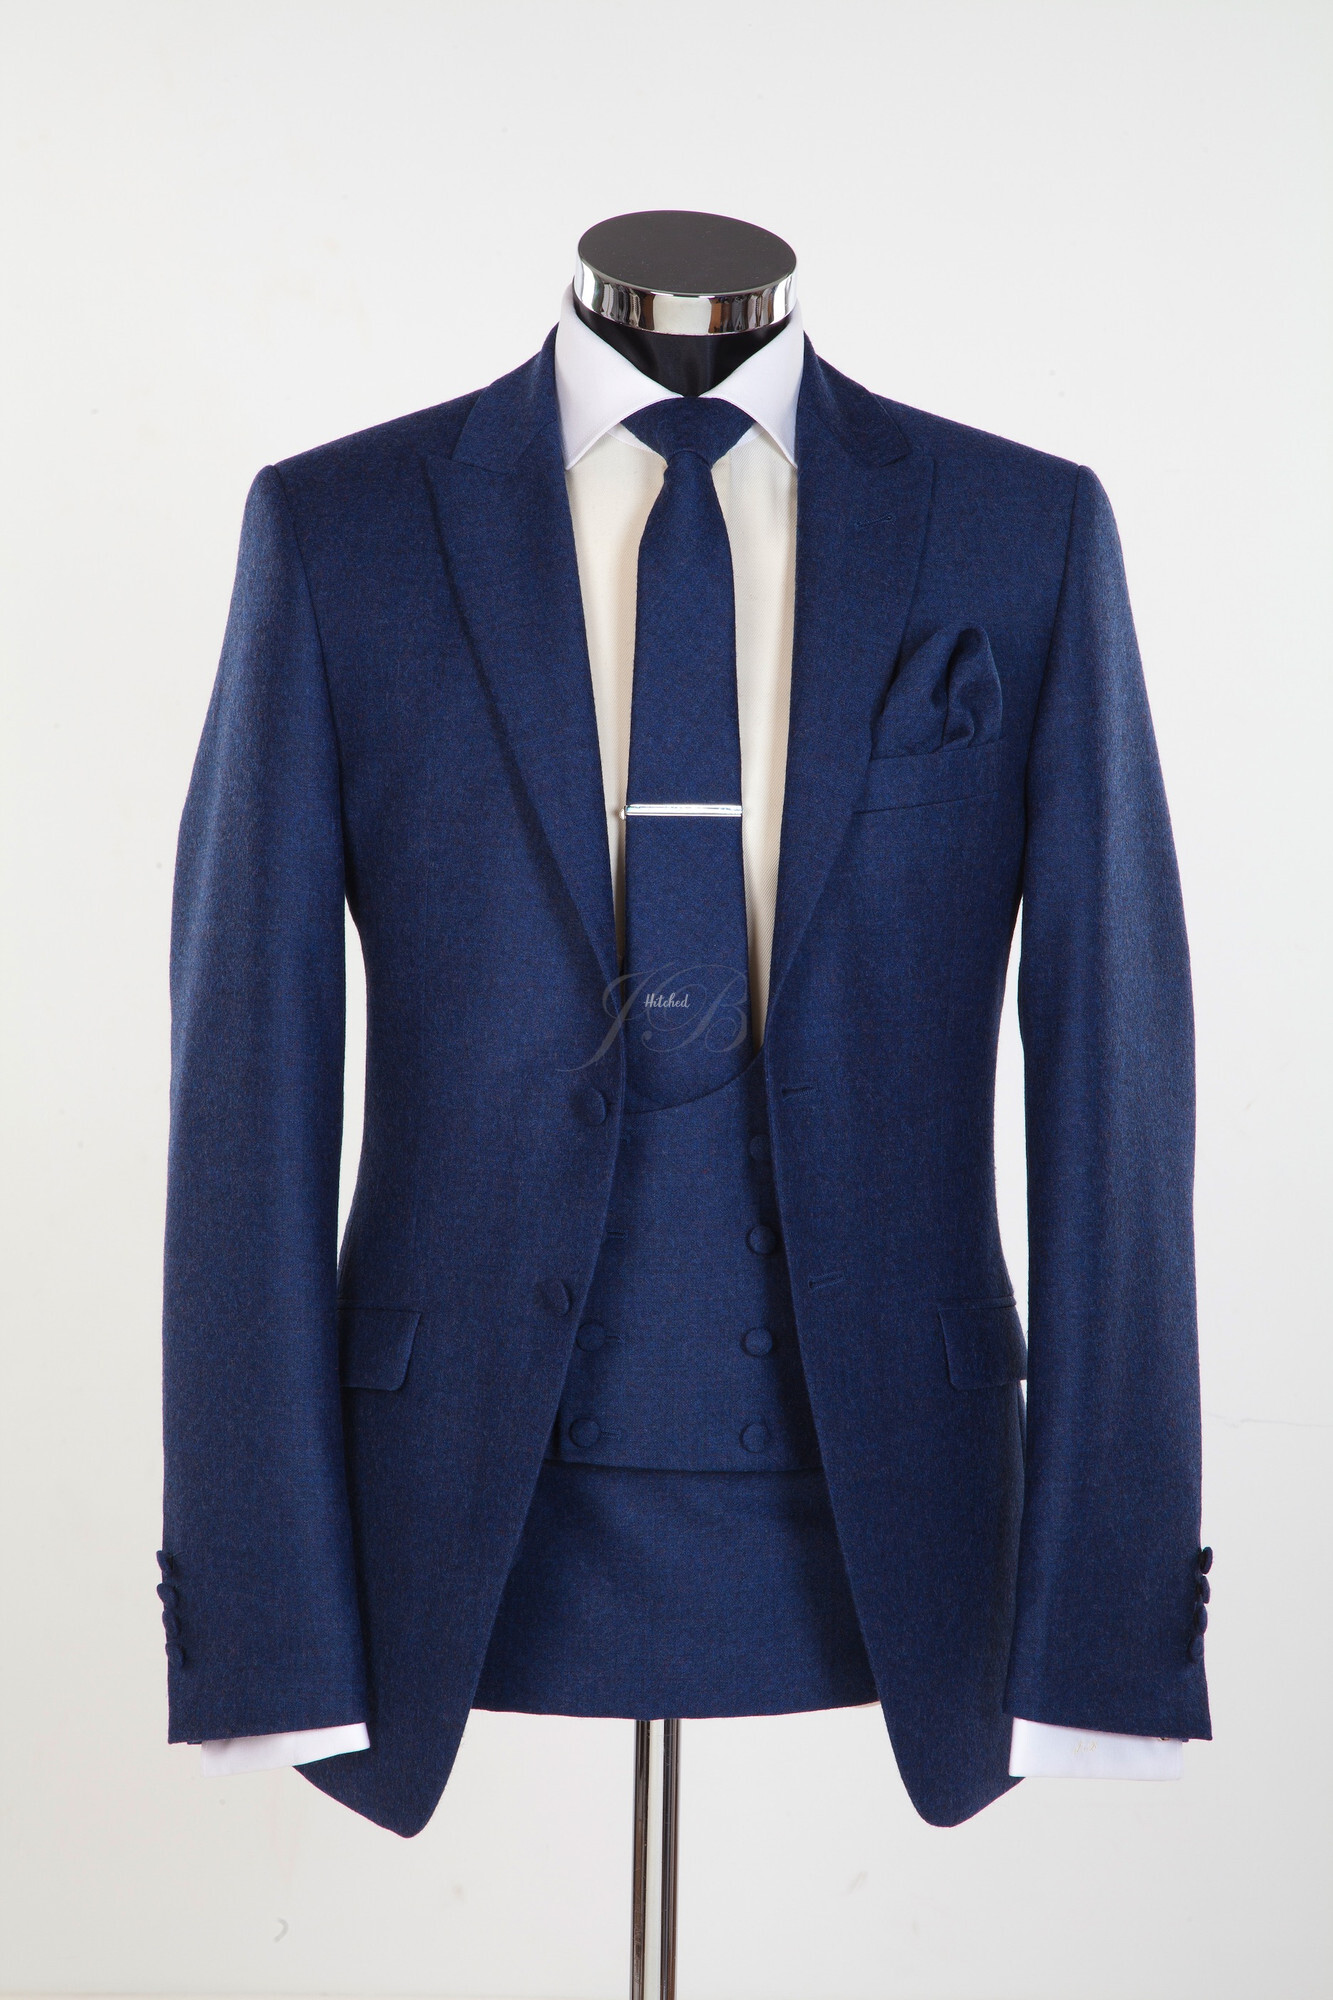 Newbury - Flannel Wool Slim Fitting Wedding Suit in Blue Mens Wedding ...